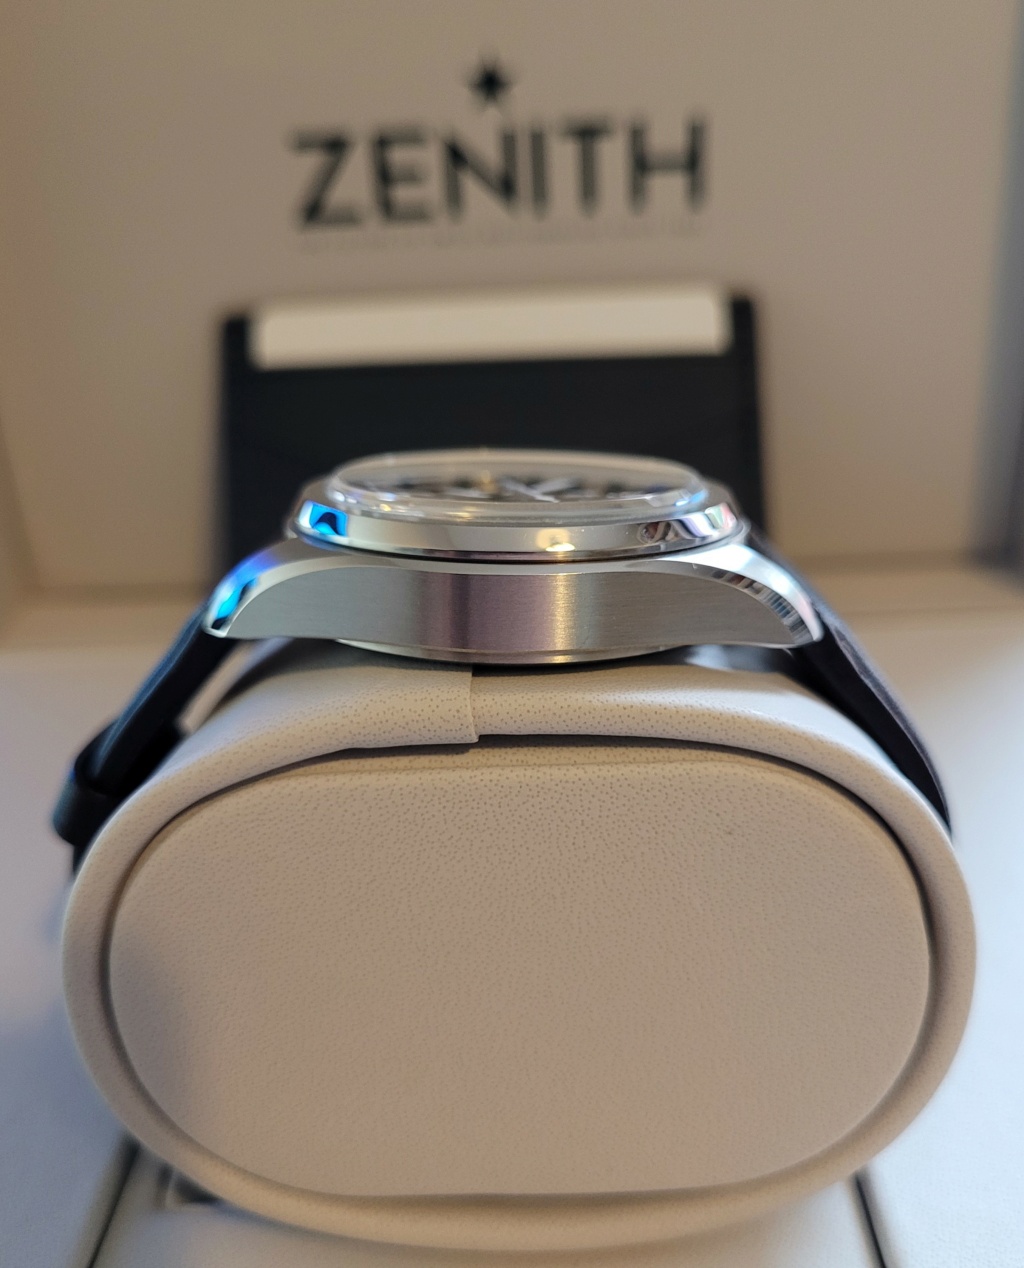 [Vends] Zenith Pilot Automatic - 5600€ Flanc_10